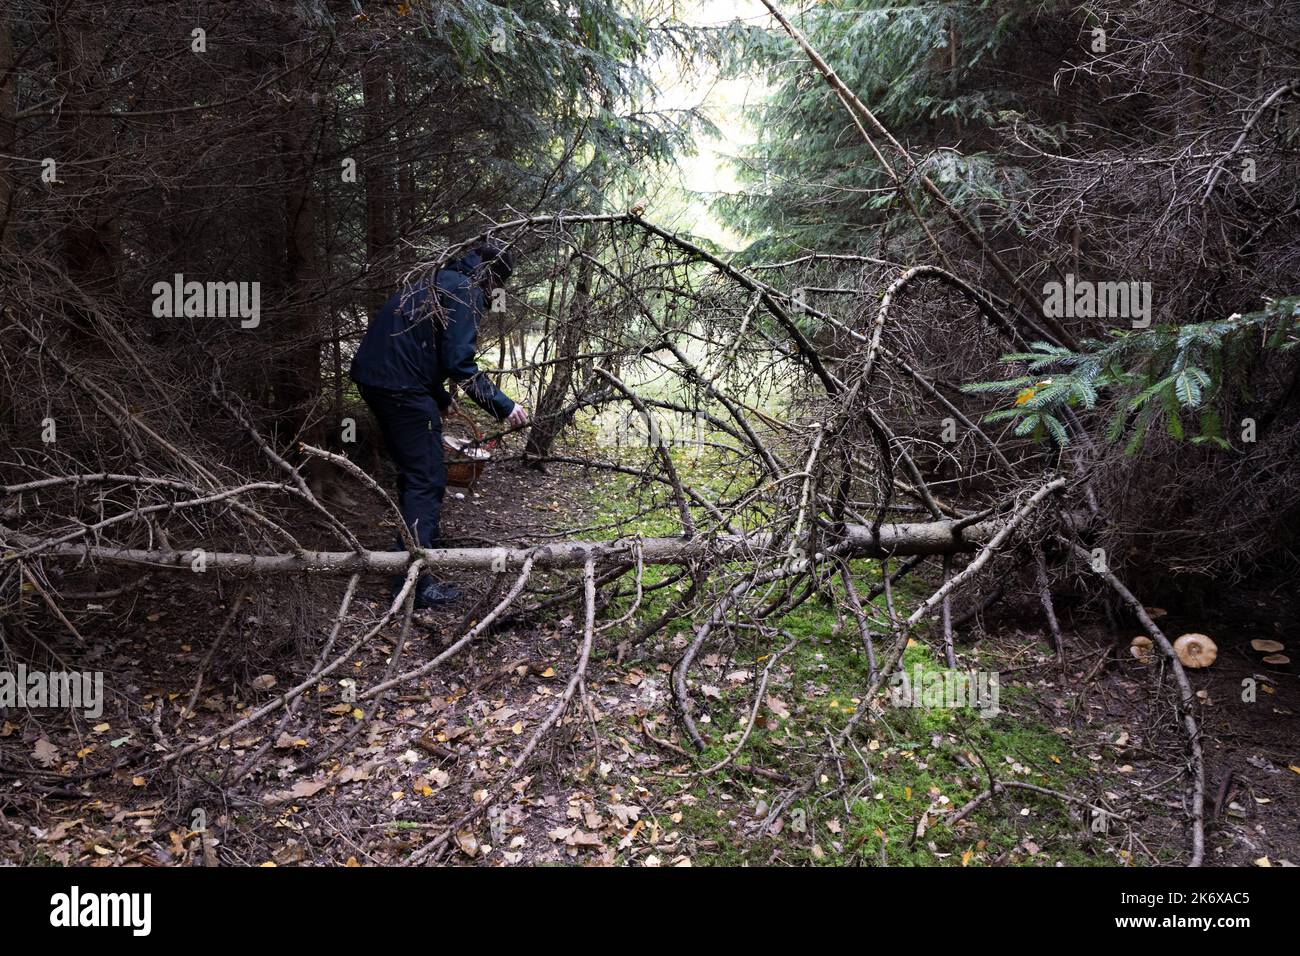 persona nella foresta alla ricerca di funghi con un cestino. Foto di alta qualità Foto Stock